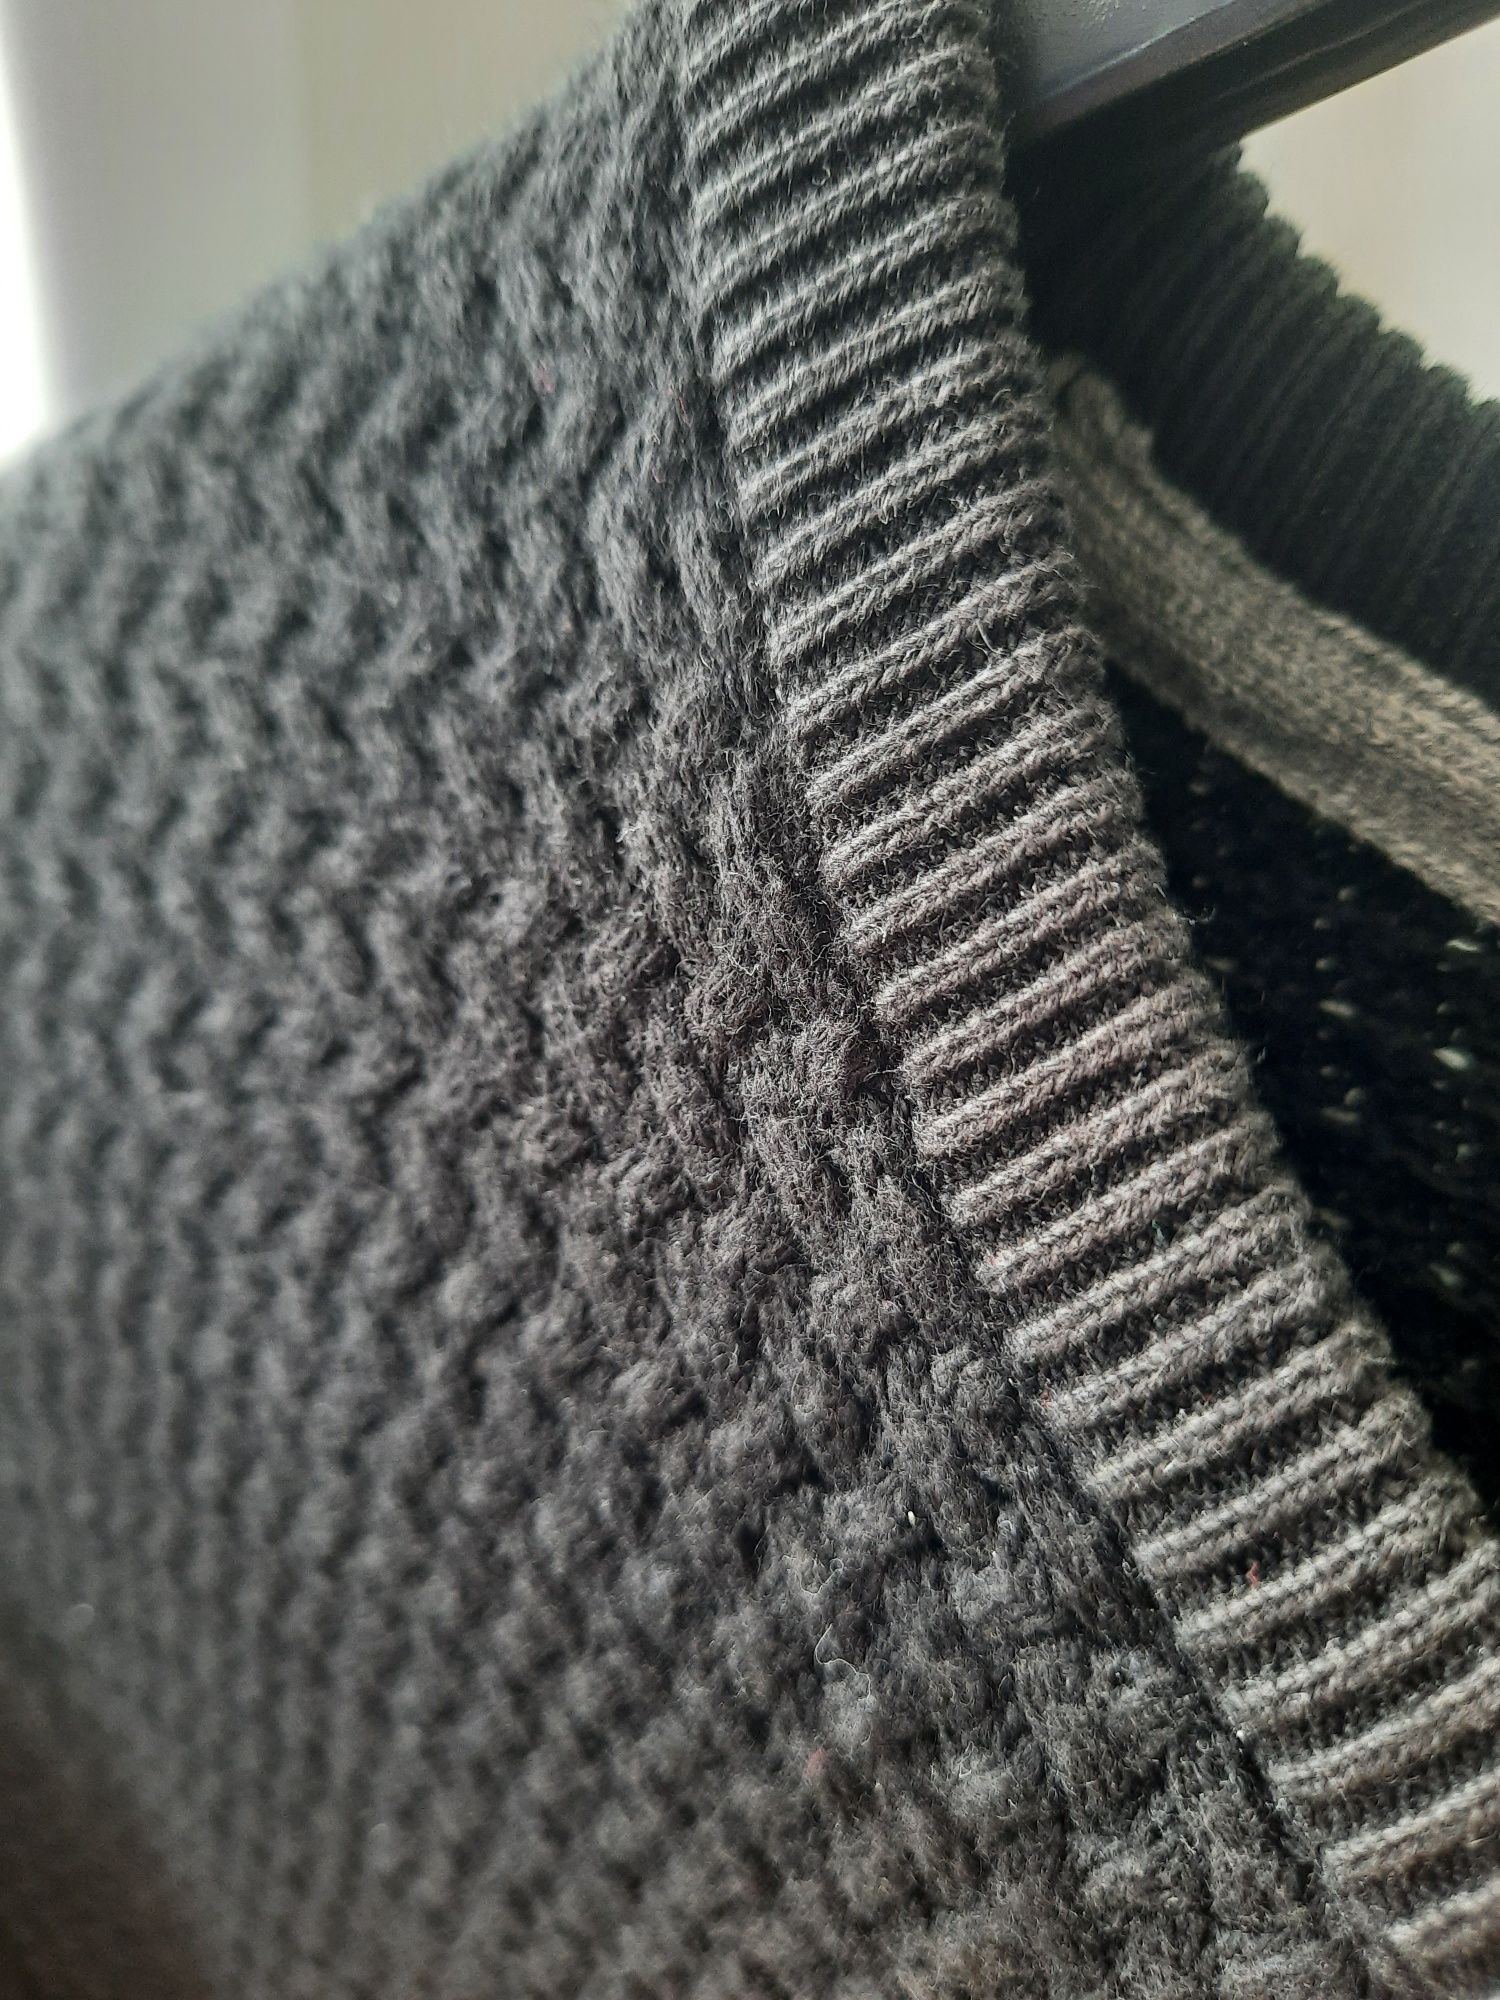 Sweter męski czarny premium 100% bawełna. Marks&Spencer  Rozmiar M /L.